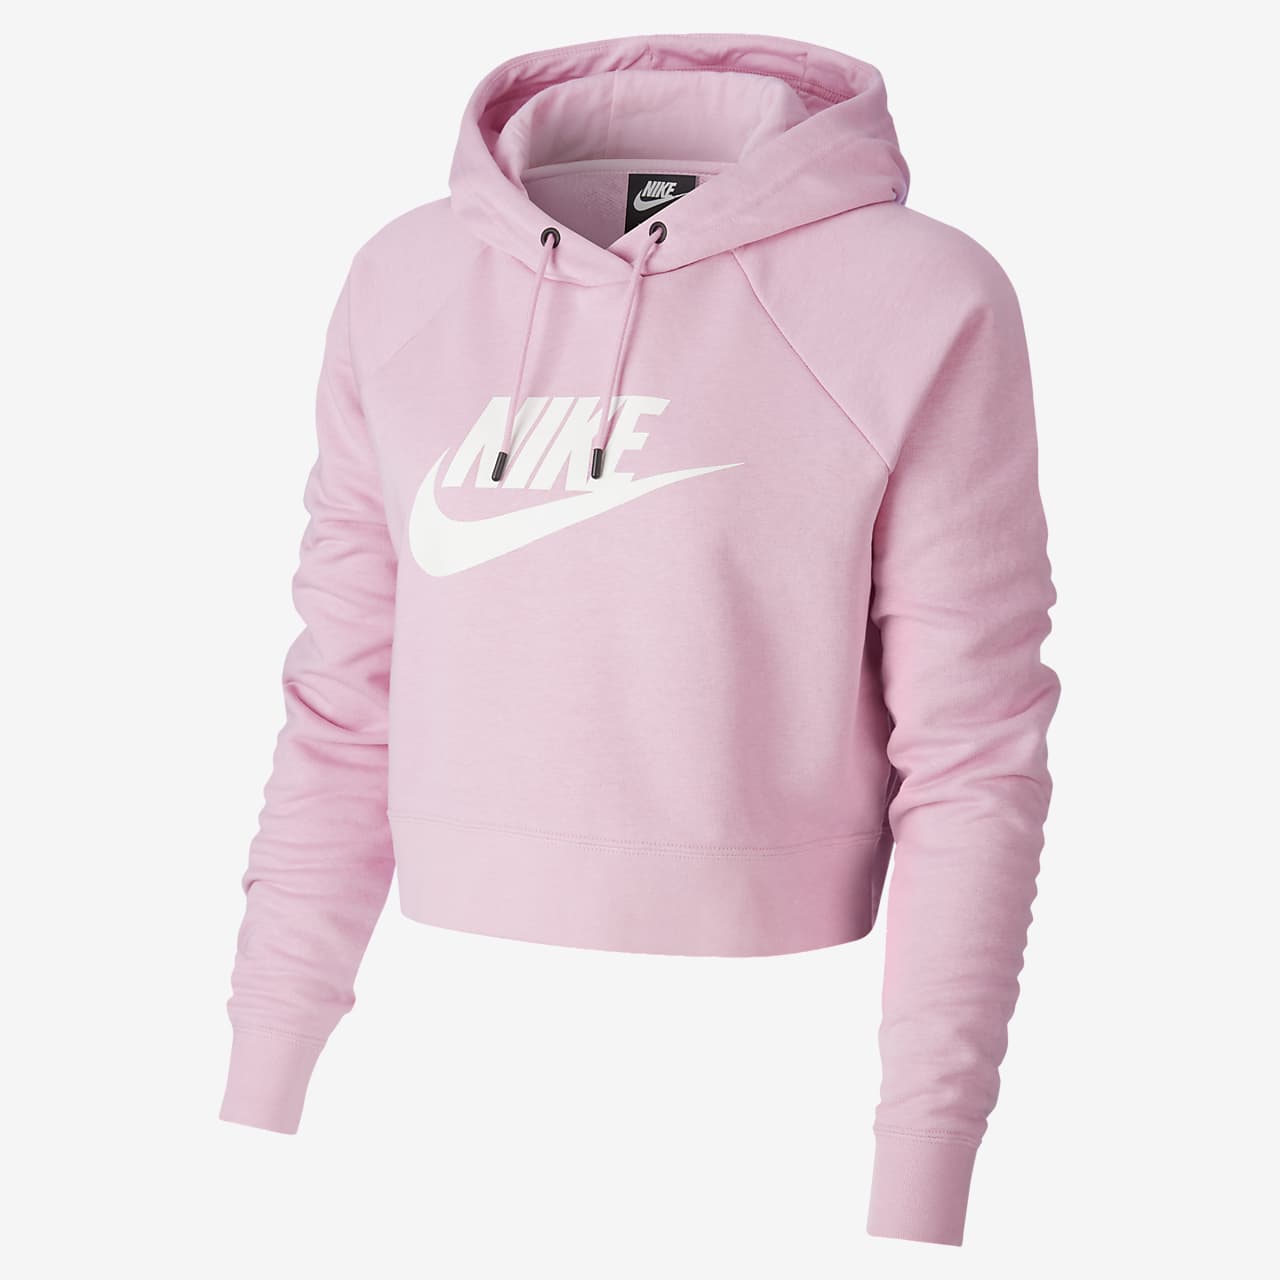 nike essentials pink cropped high neck sweatshirt